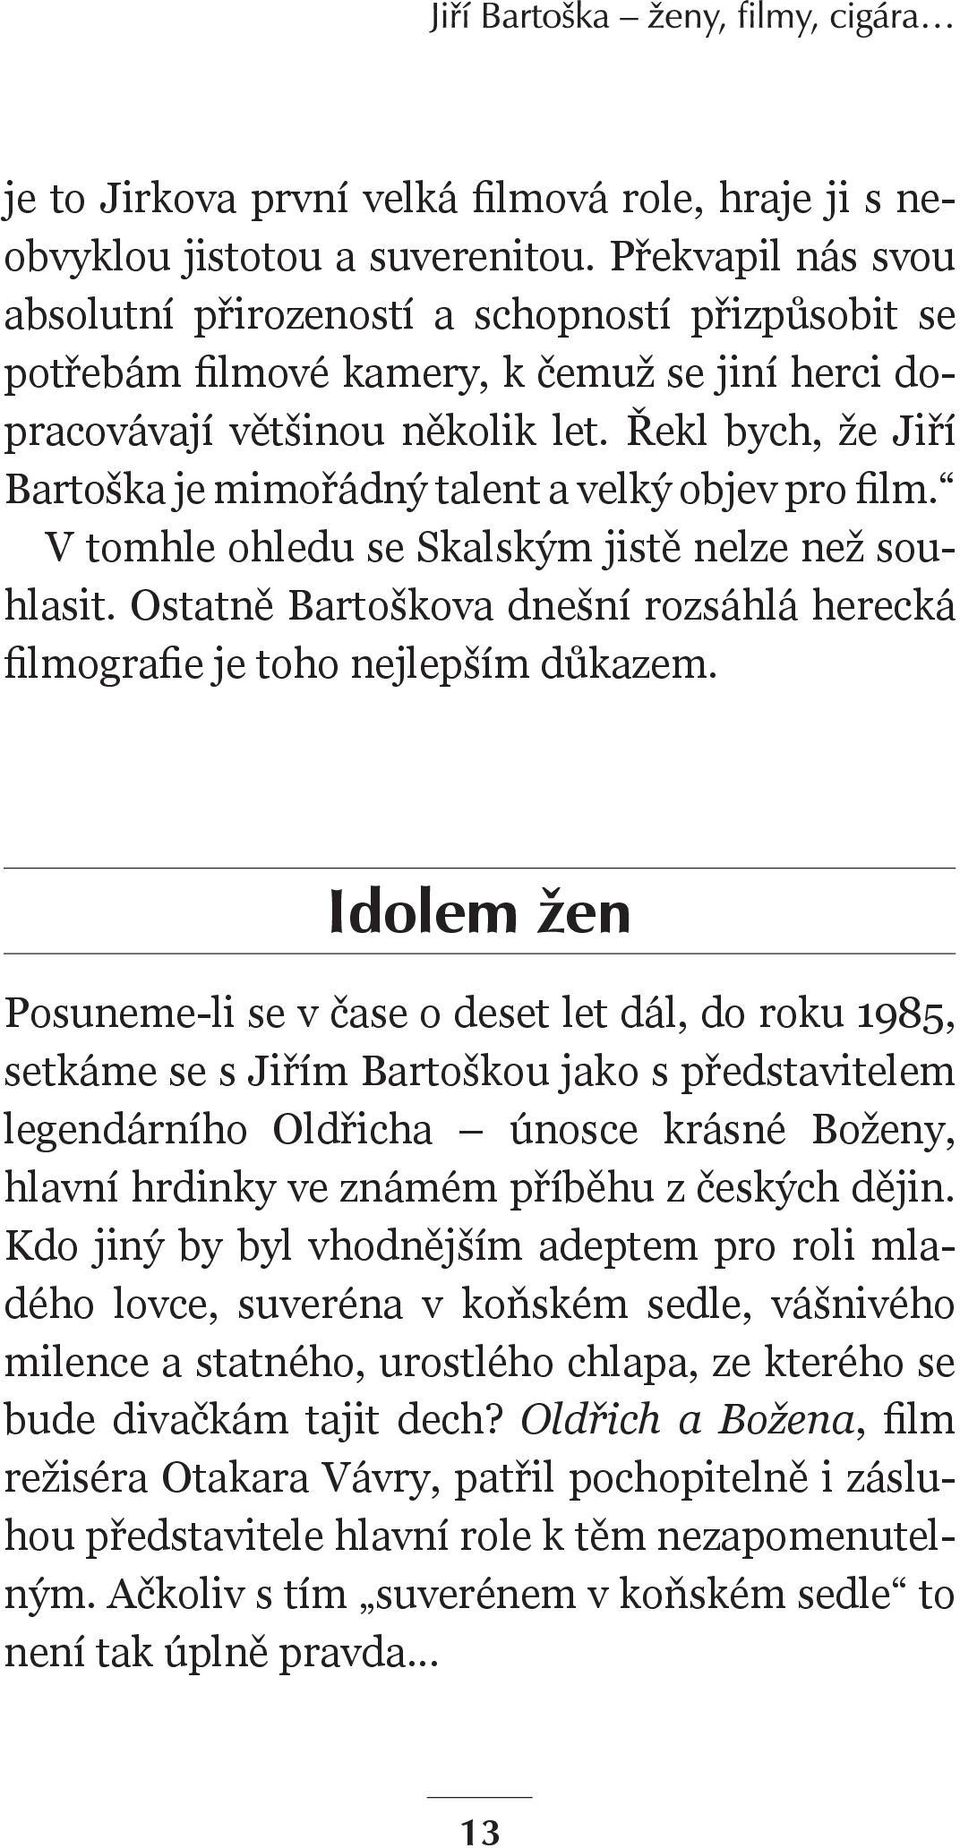 Řekl bych, že Jiří Bartoška je mimořádný talent a velký objev pro film. V tomhle ohledu se Skalským jistě nelze než souhlasit.